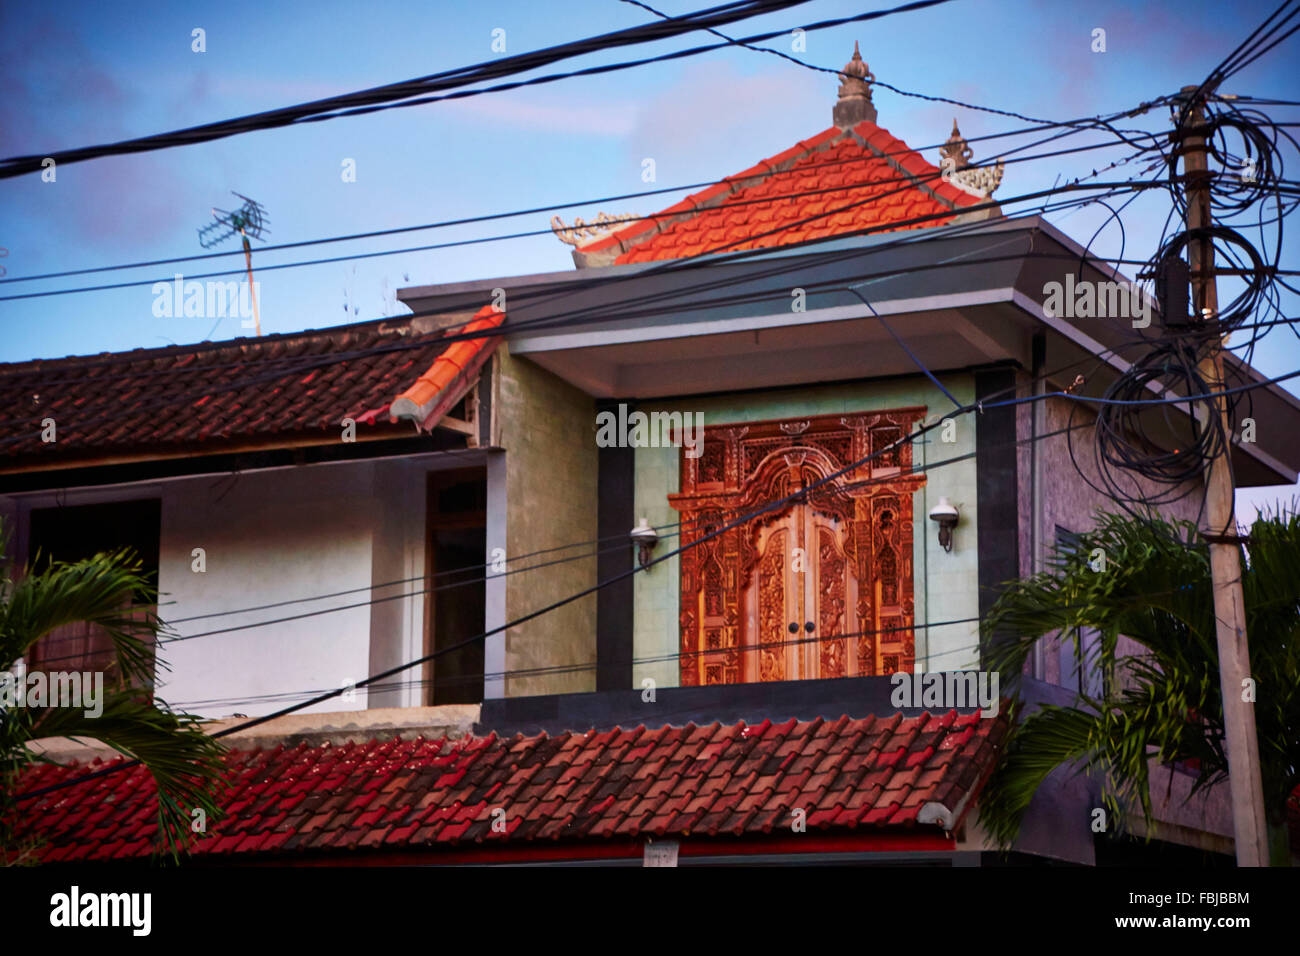 Maison, toitures, poteaux électriques, câble électrique, ciel bleu, Bali, Indonésie, Asie Banque D'Images